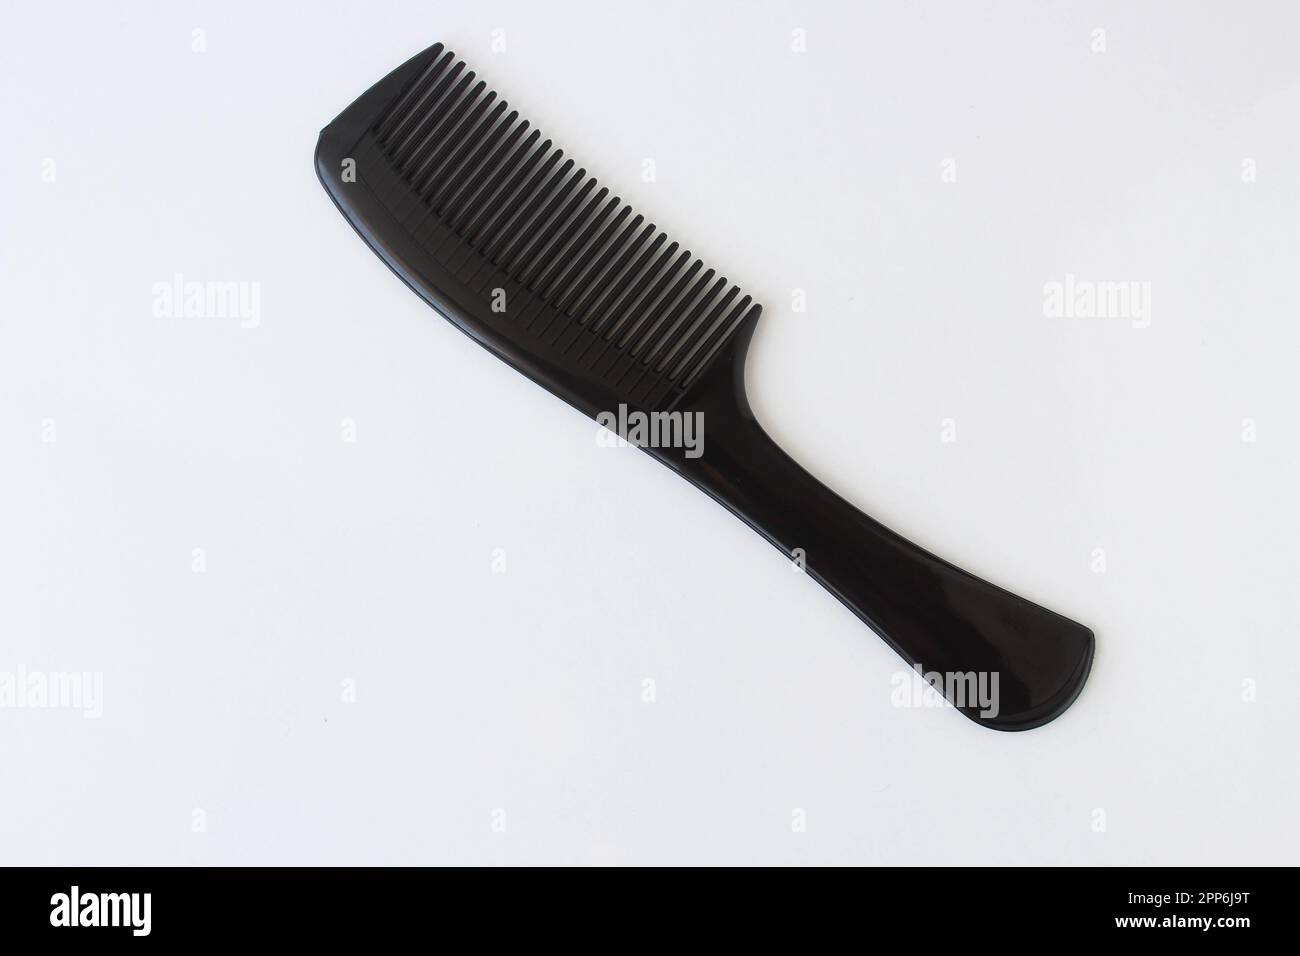 Vue de dessus sur une brosse à cheveux en plastique de couleur noire isolée sur fond blanc. Banque D'Images